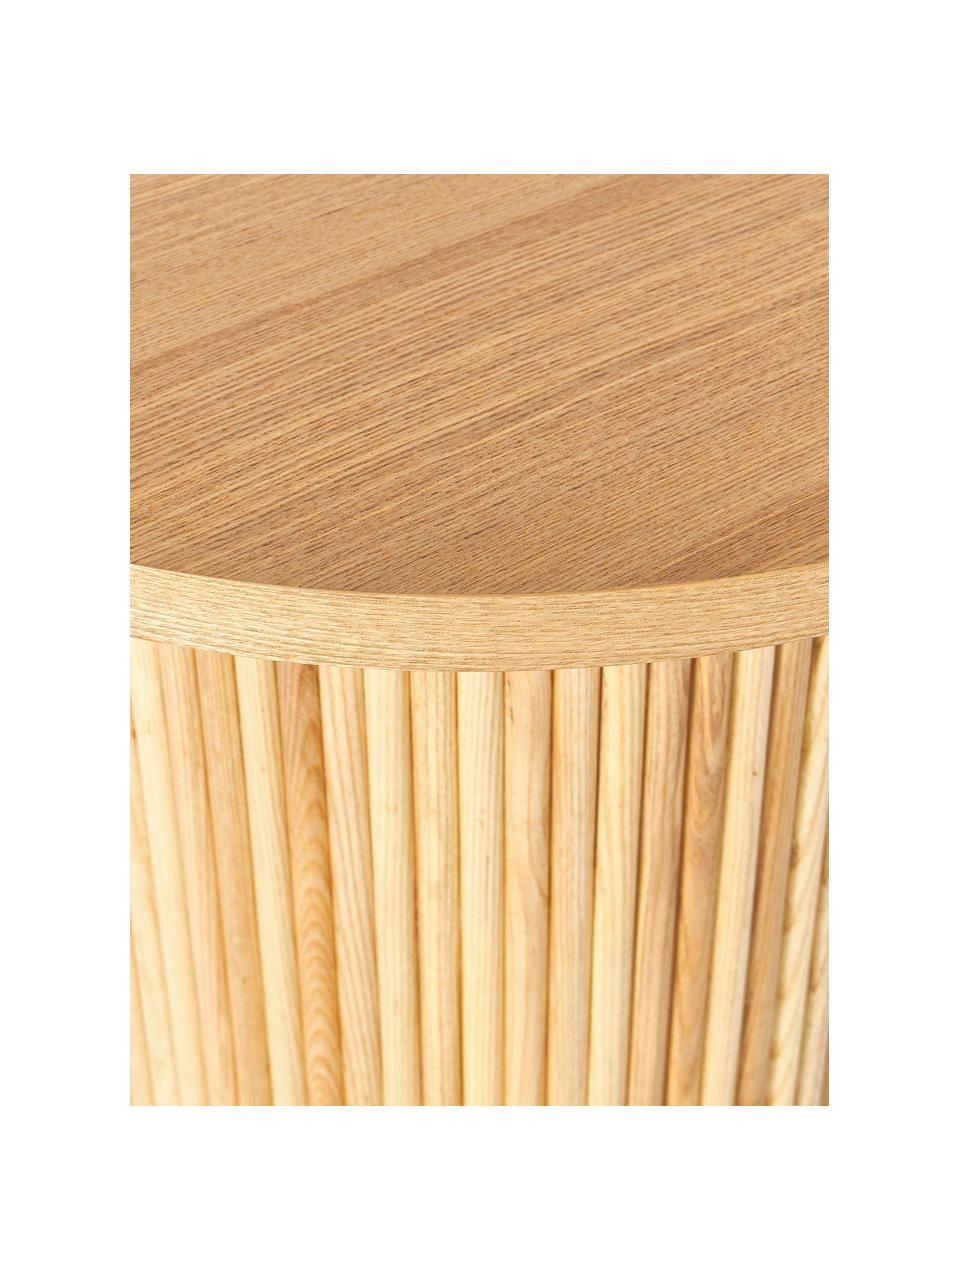 Runder Holz-Beistelltisch Nele, Mitteldichte Holzfaserplatte (MDF) mit Eschenholzfurnier

Dieses Produkt wird aus nachhaltig gewonnenem, FSC®-zertifiziertem Holz gefertigt., Helles Eschenholz, Ø 60 x H 51 cm